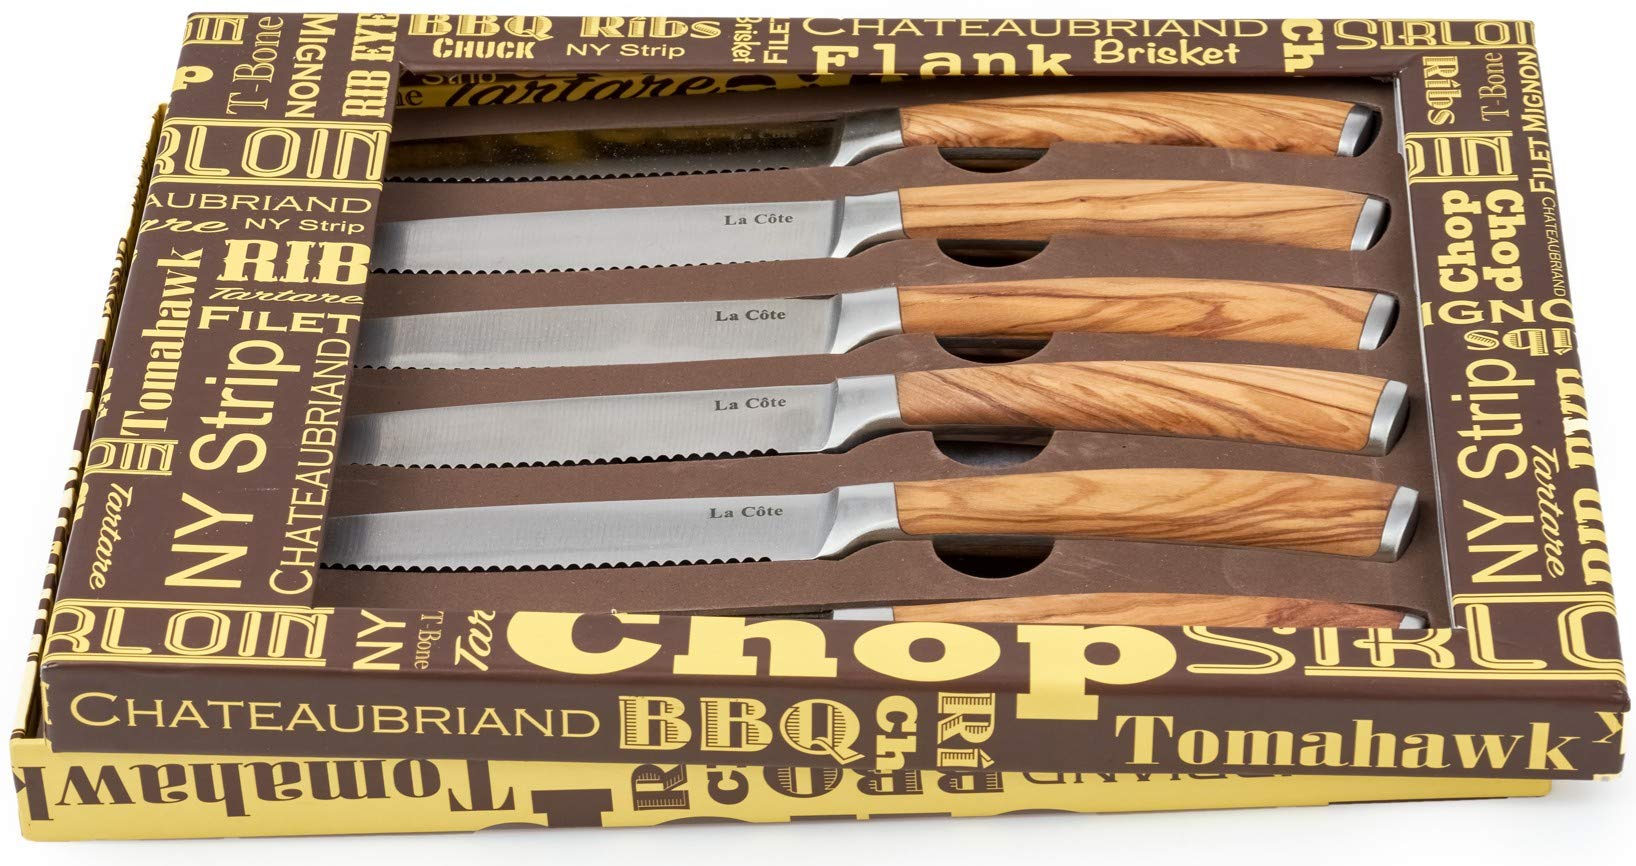 5100USS - BONE STEAK KNIVES (6)